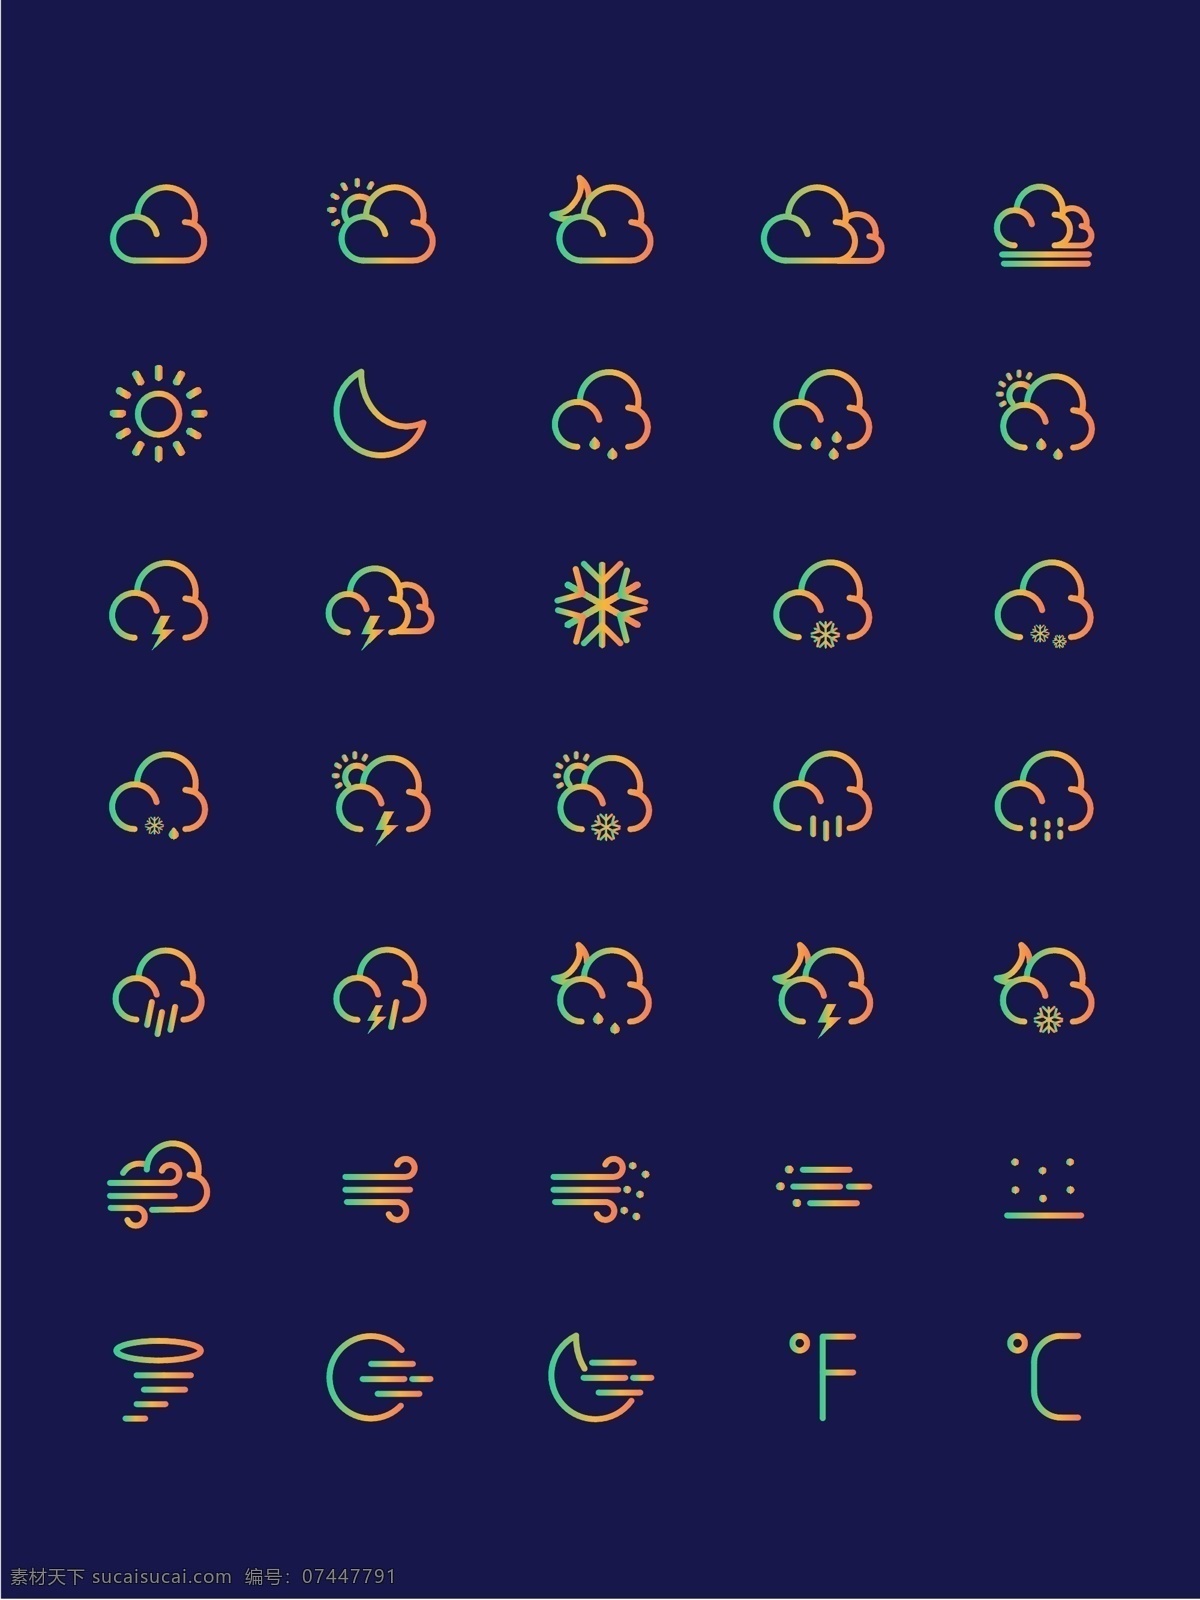 渐变 天气 ui 手机 主题 矢量 icon 图标 天气icon 彩色图标 渐变图标 矢量图标